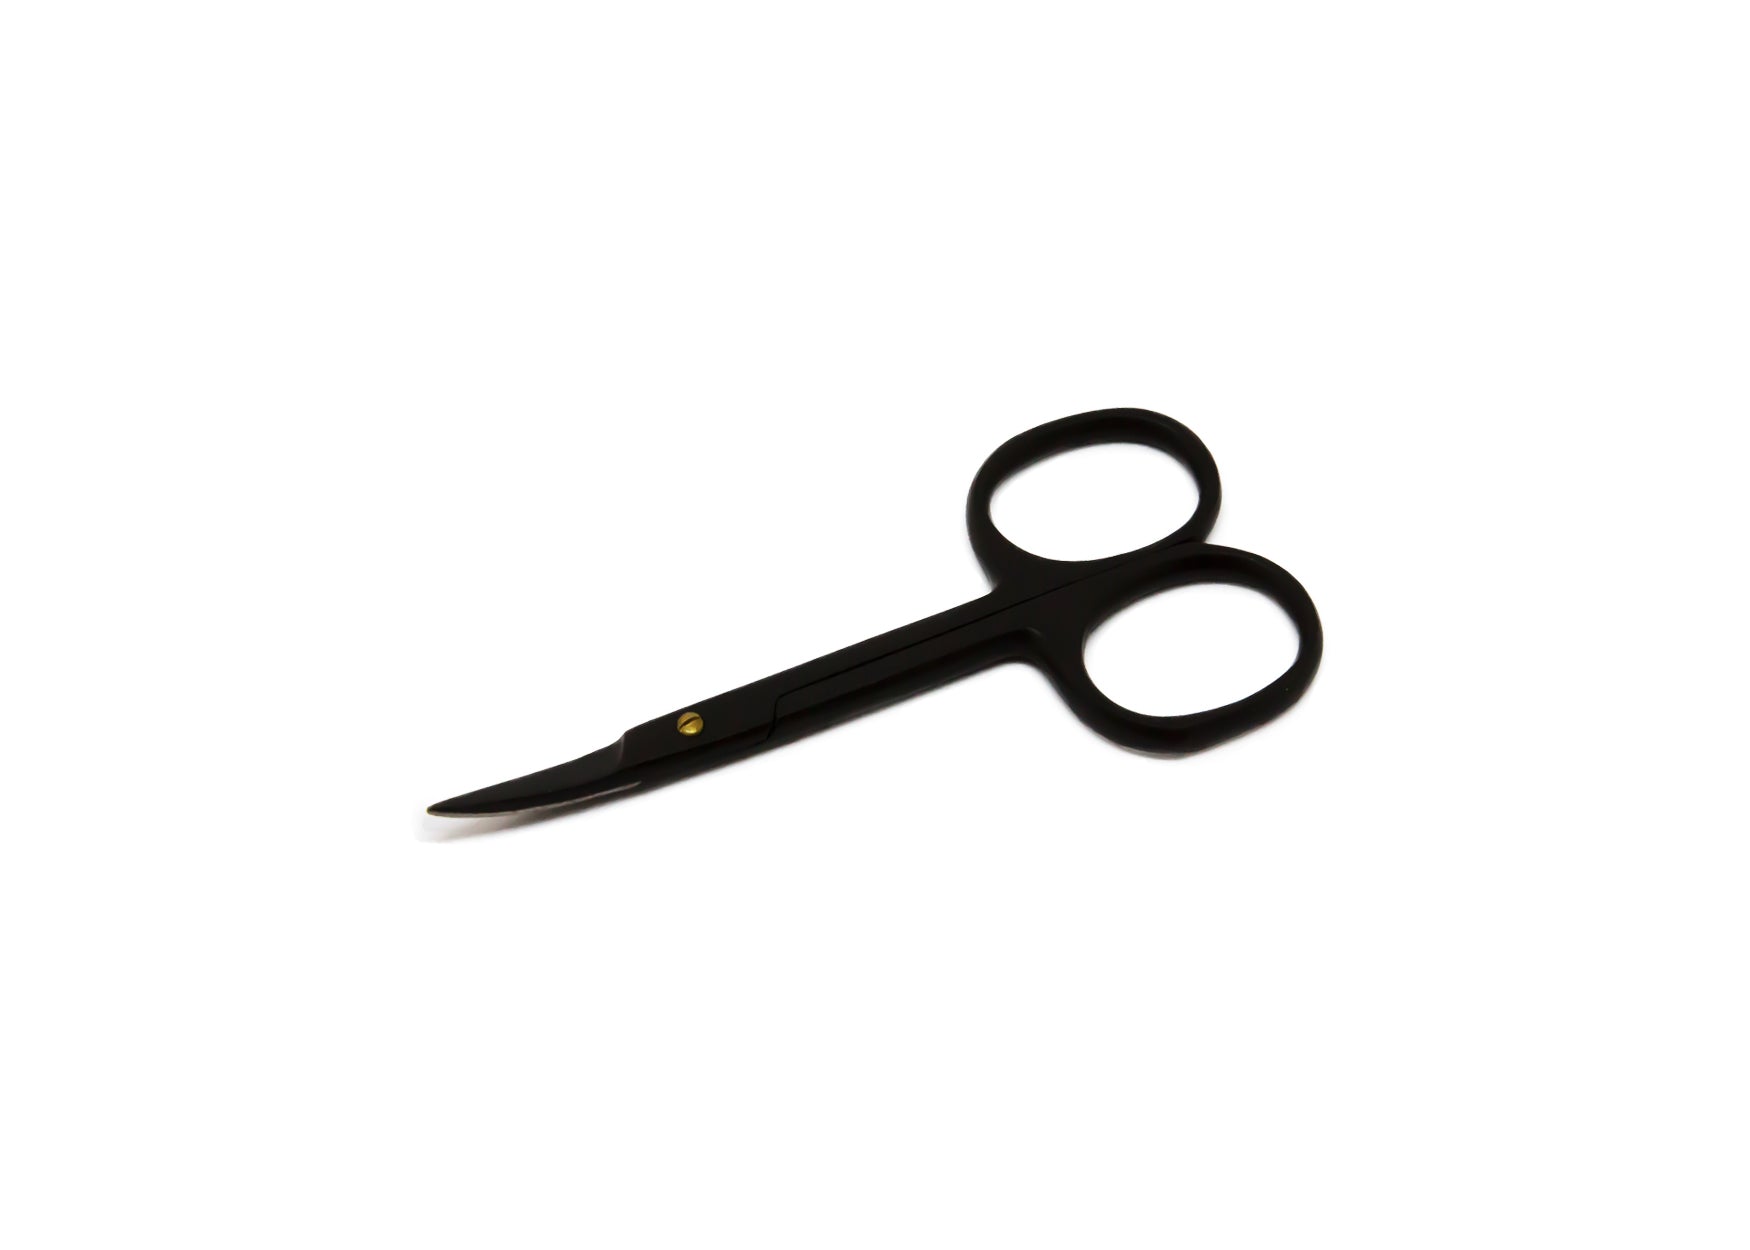 18K Curved Cuticle Scissors